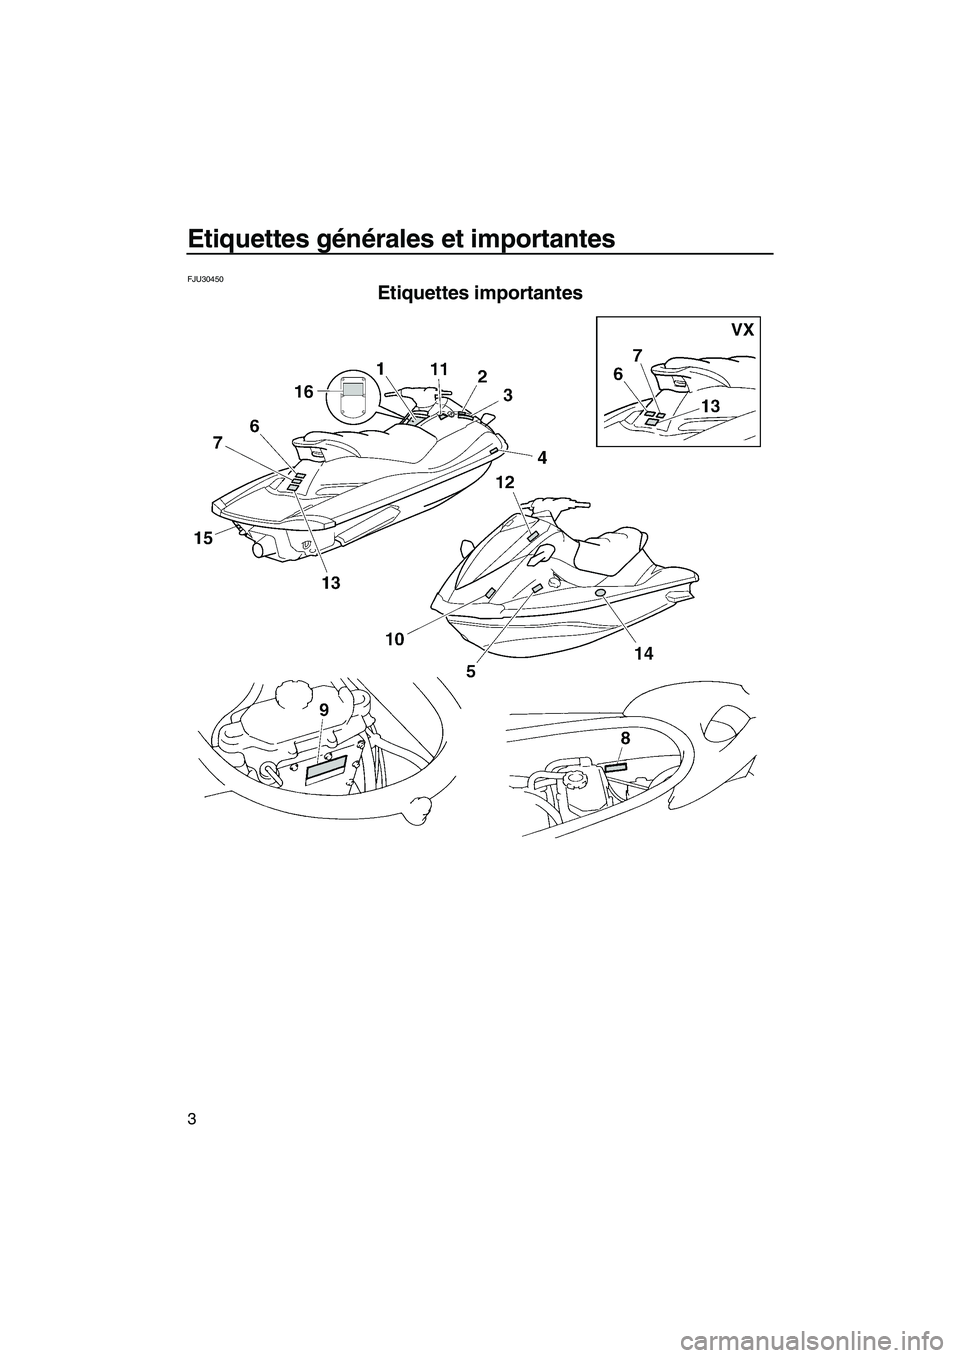 YAMAHA VX 2008  Notices Demploi (in French) Etiquettes générales et importantes
3
FJU30450
Etiquettes importantes 
UF1K73F0.book  Page 3  Wednesday, July 11, 2007  4:05 PM 